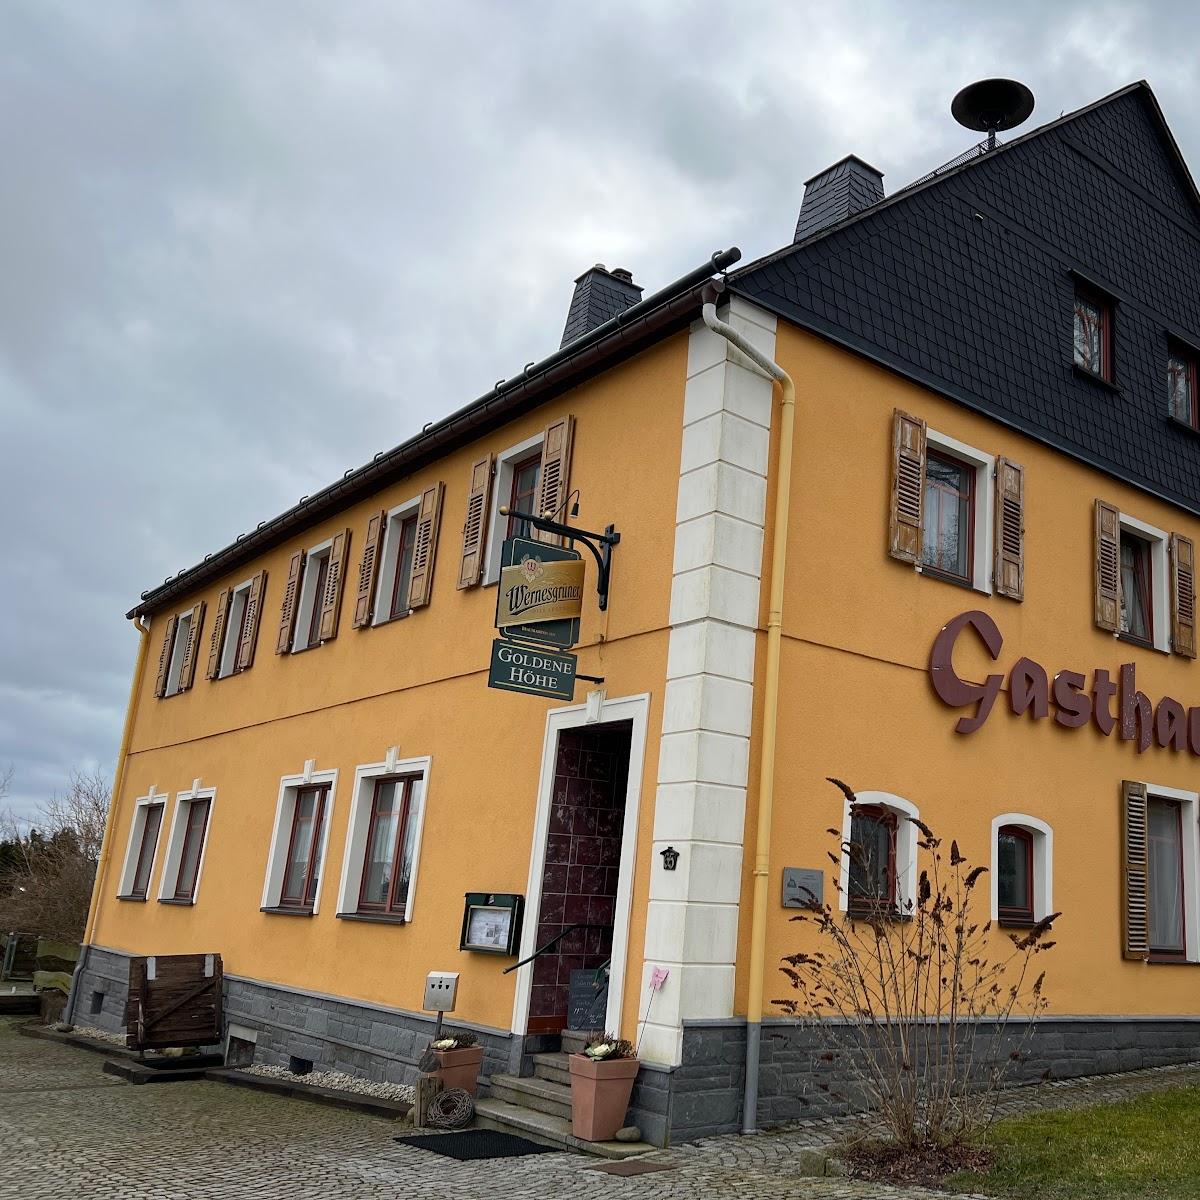 Restaurant "Gaststätte Goldene Höhe" in Schneeberg